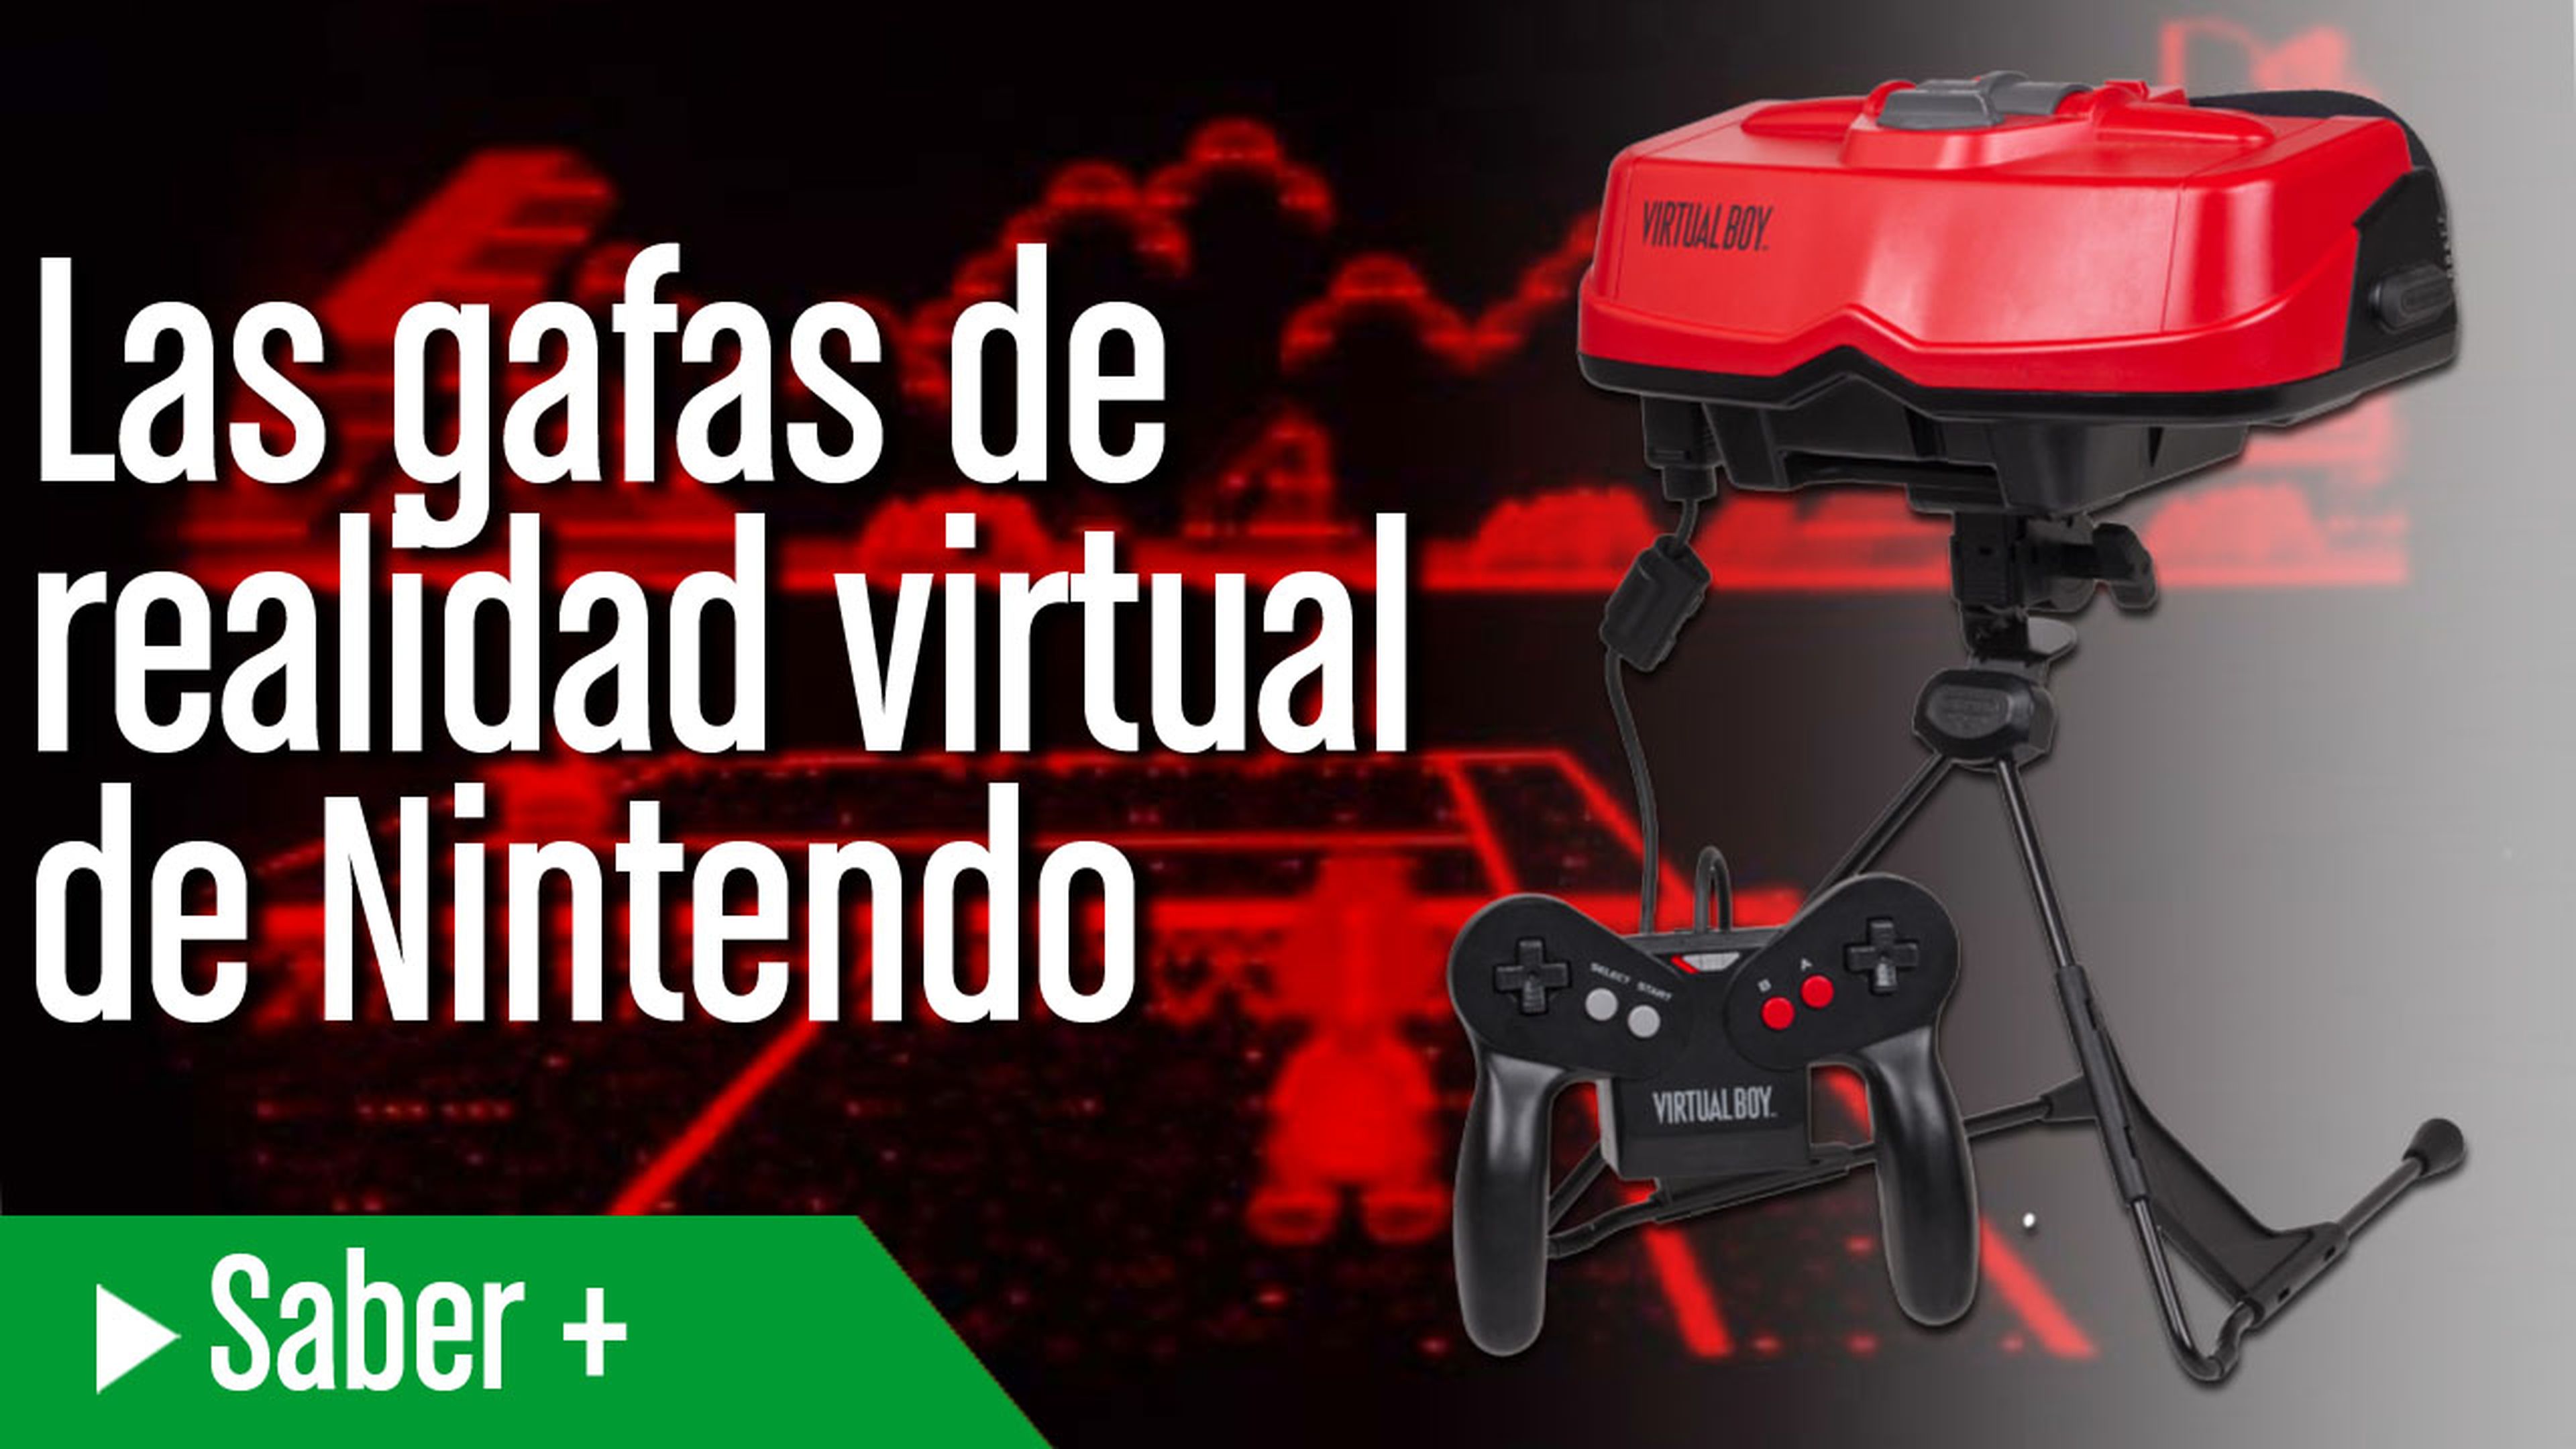 La consola de realidad virtual de Nintendo